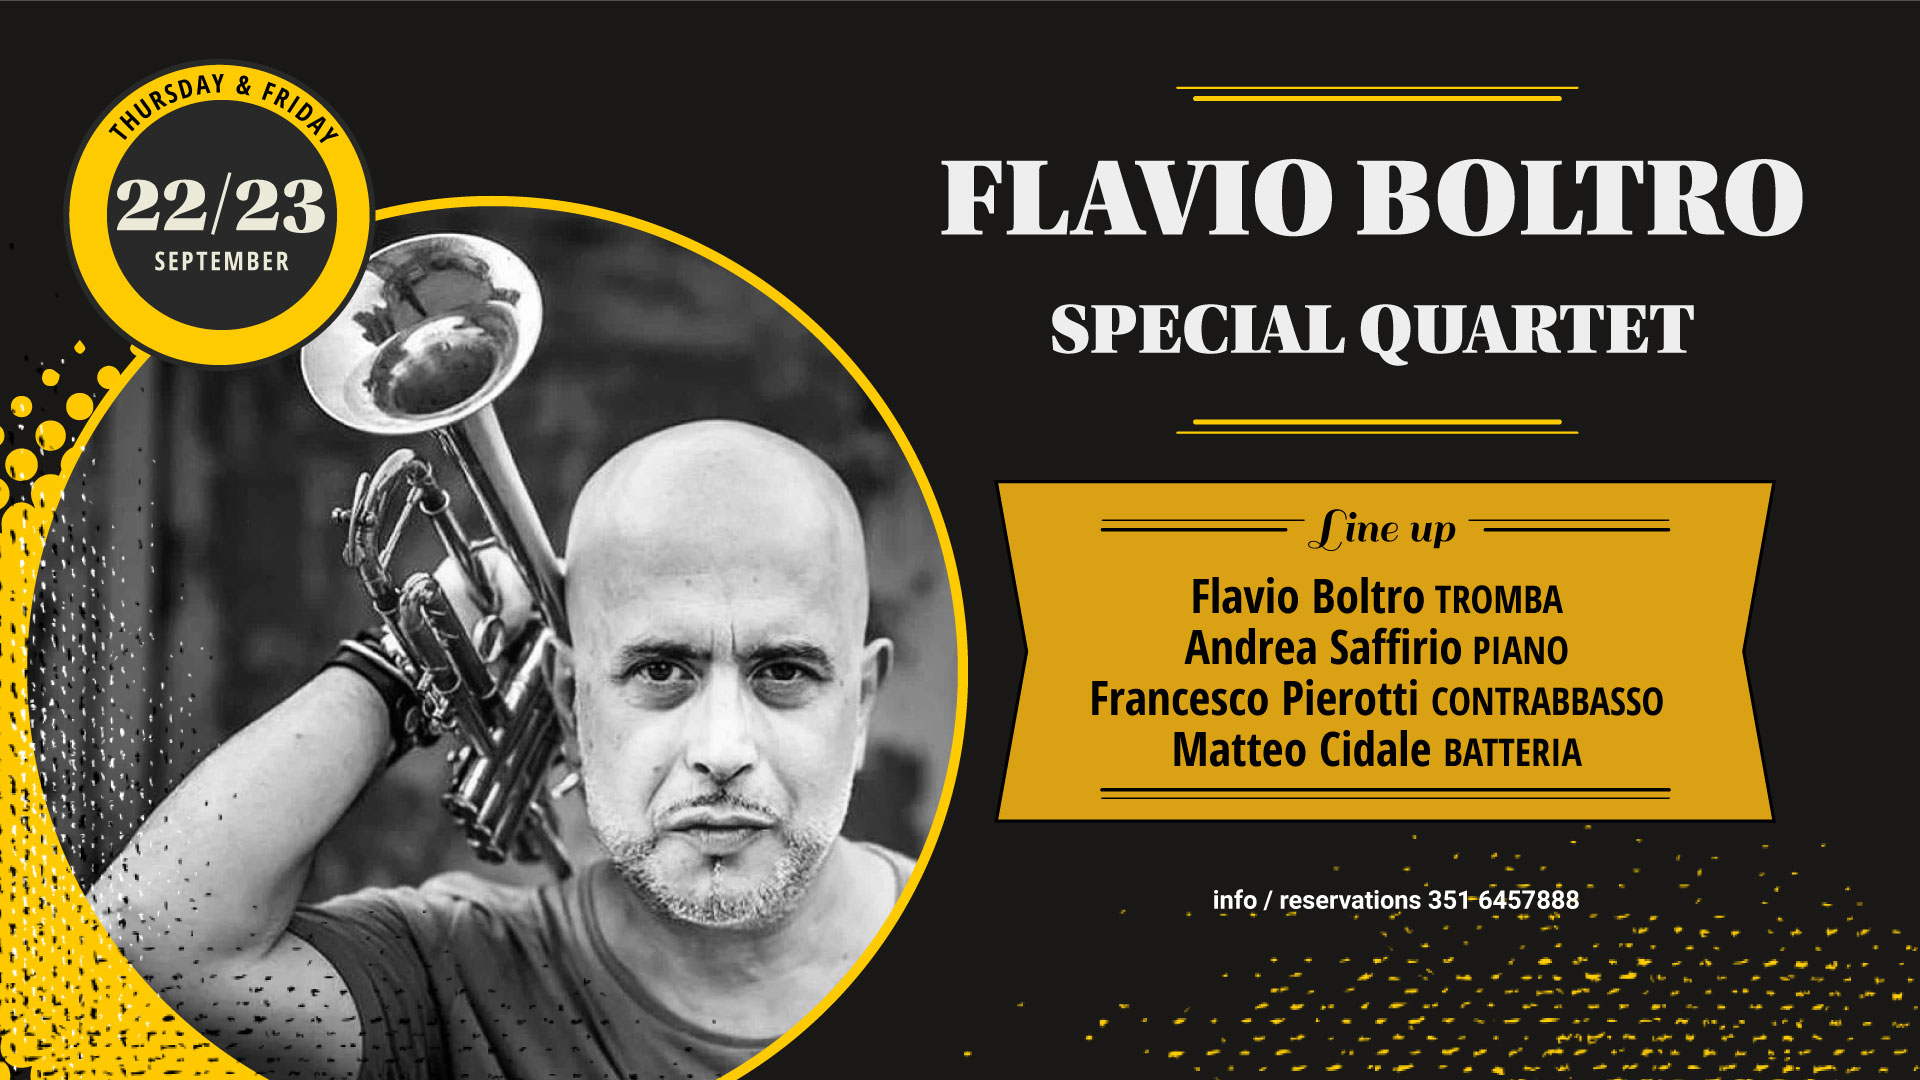 Flavio Boltro Special Quartet – Gregory's Jazz Club